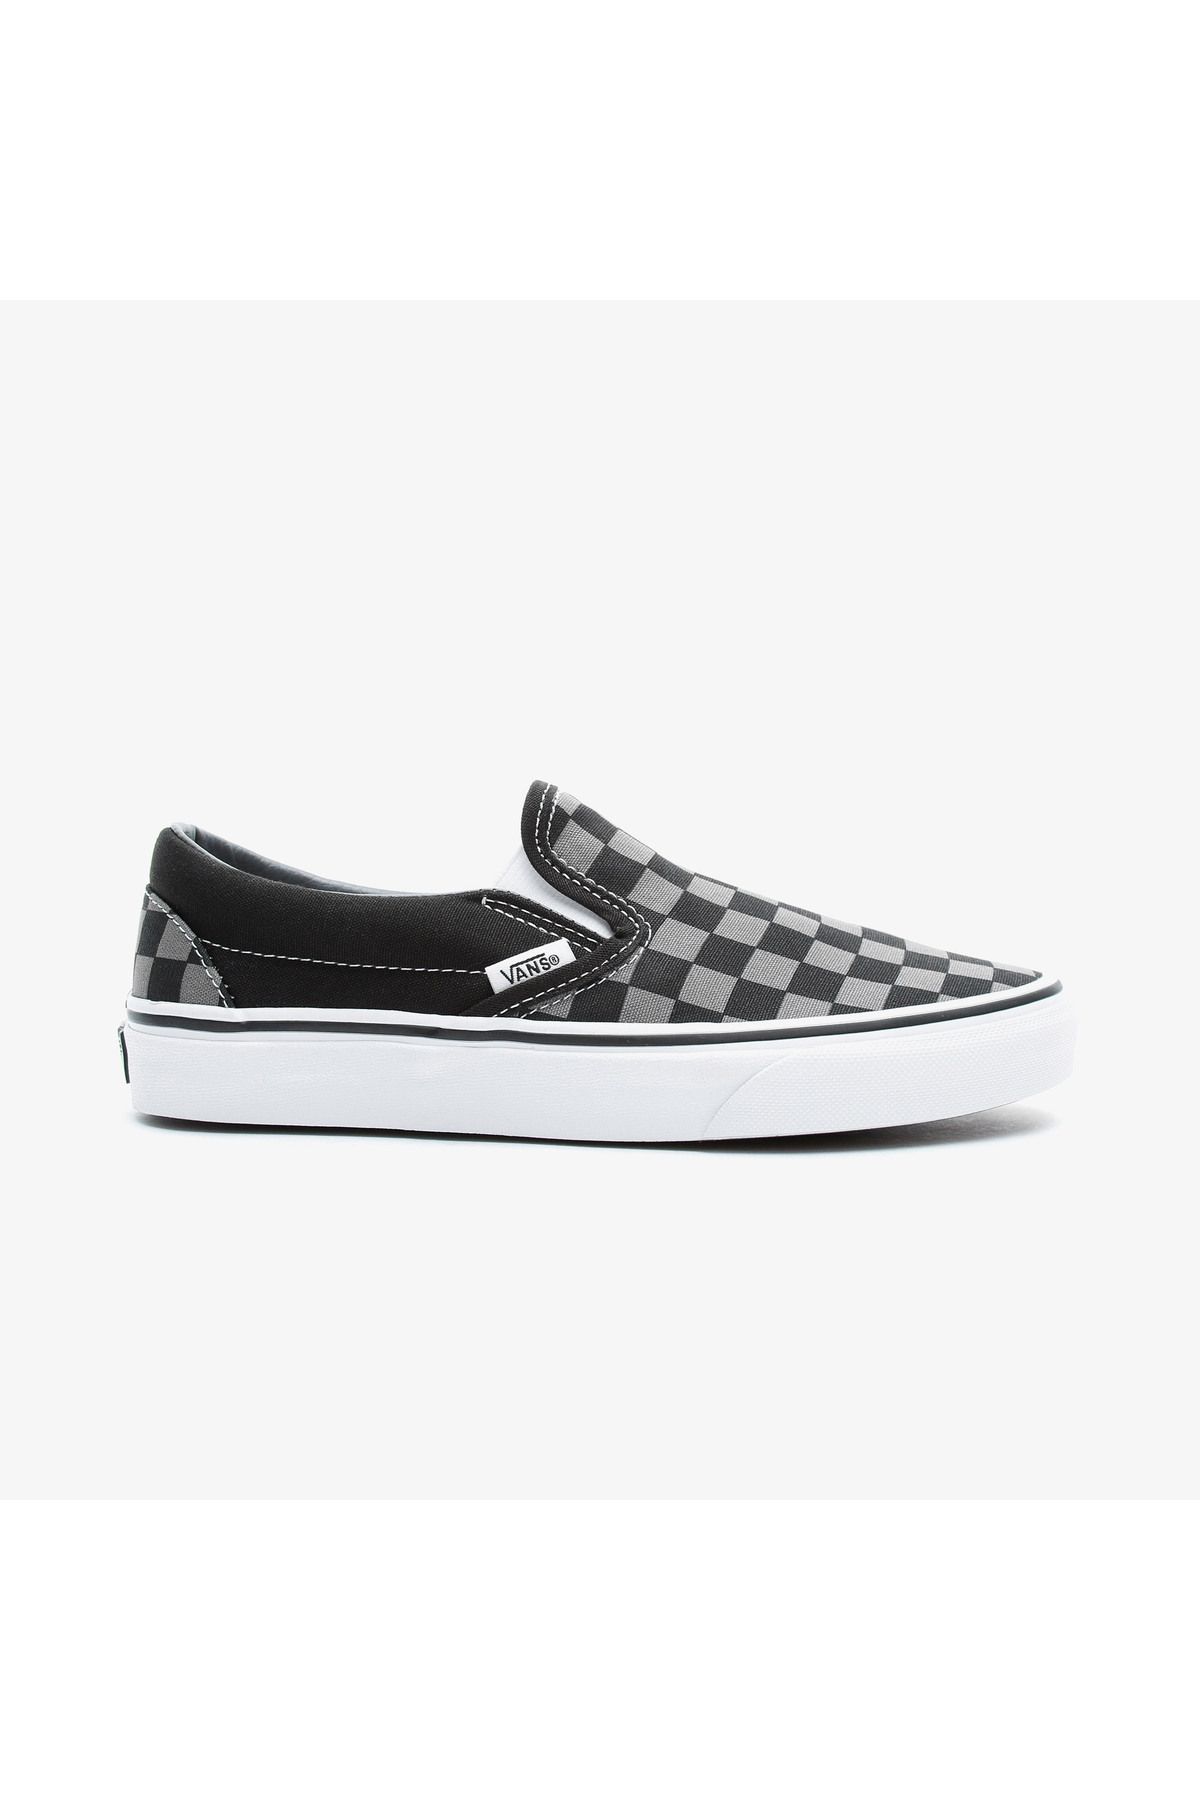 Vans Classic Slip-on Checkerboard Siyah Unisex Sneaker